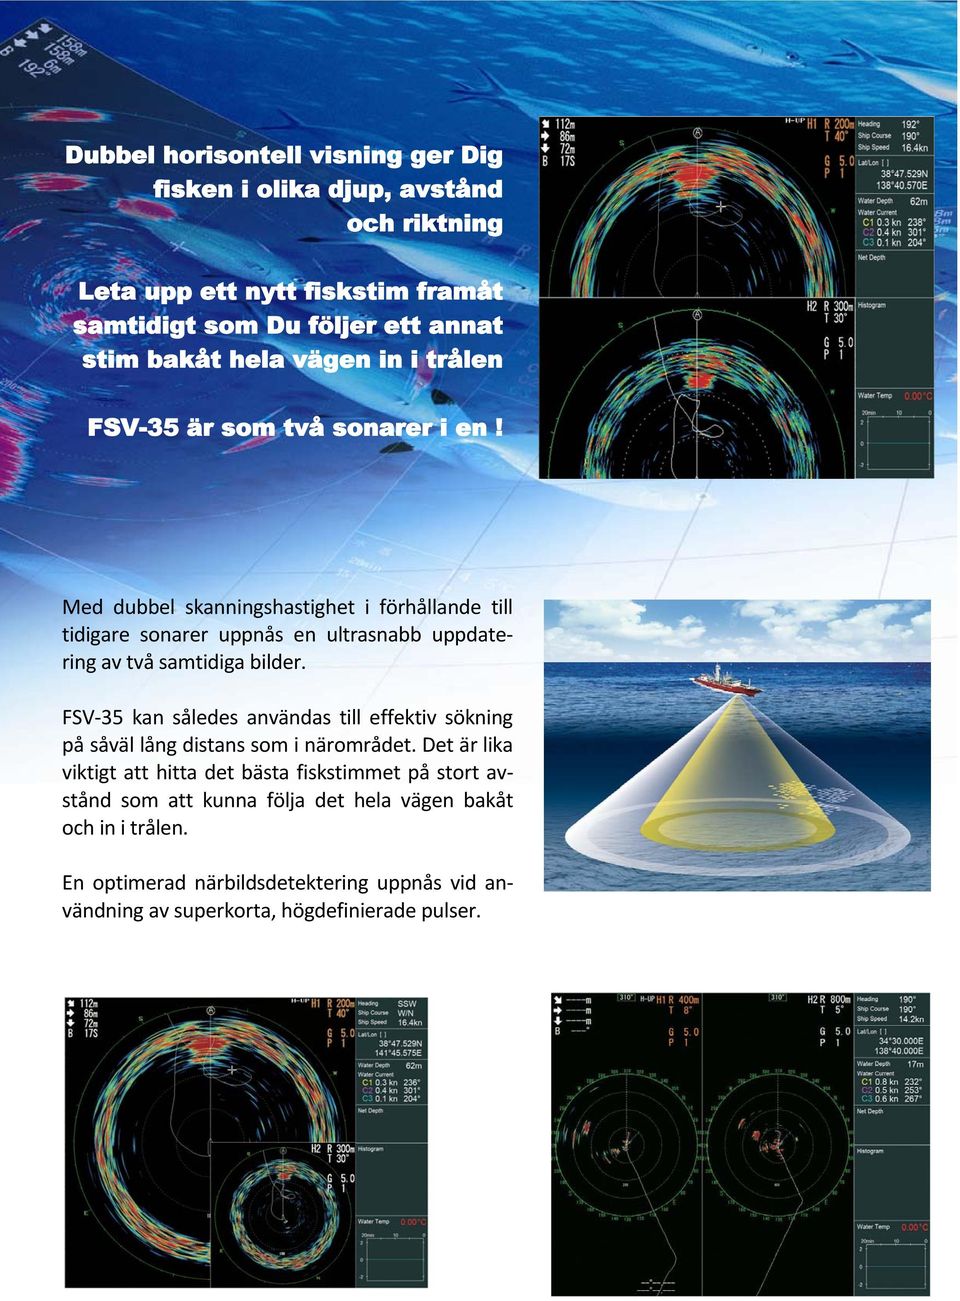 Med dubbel skanningshastighet i förhållande till tidigare sonarer uppnås en ultrasnabb uppdatering av två samtidiga bilder.